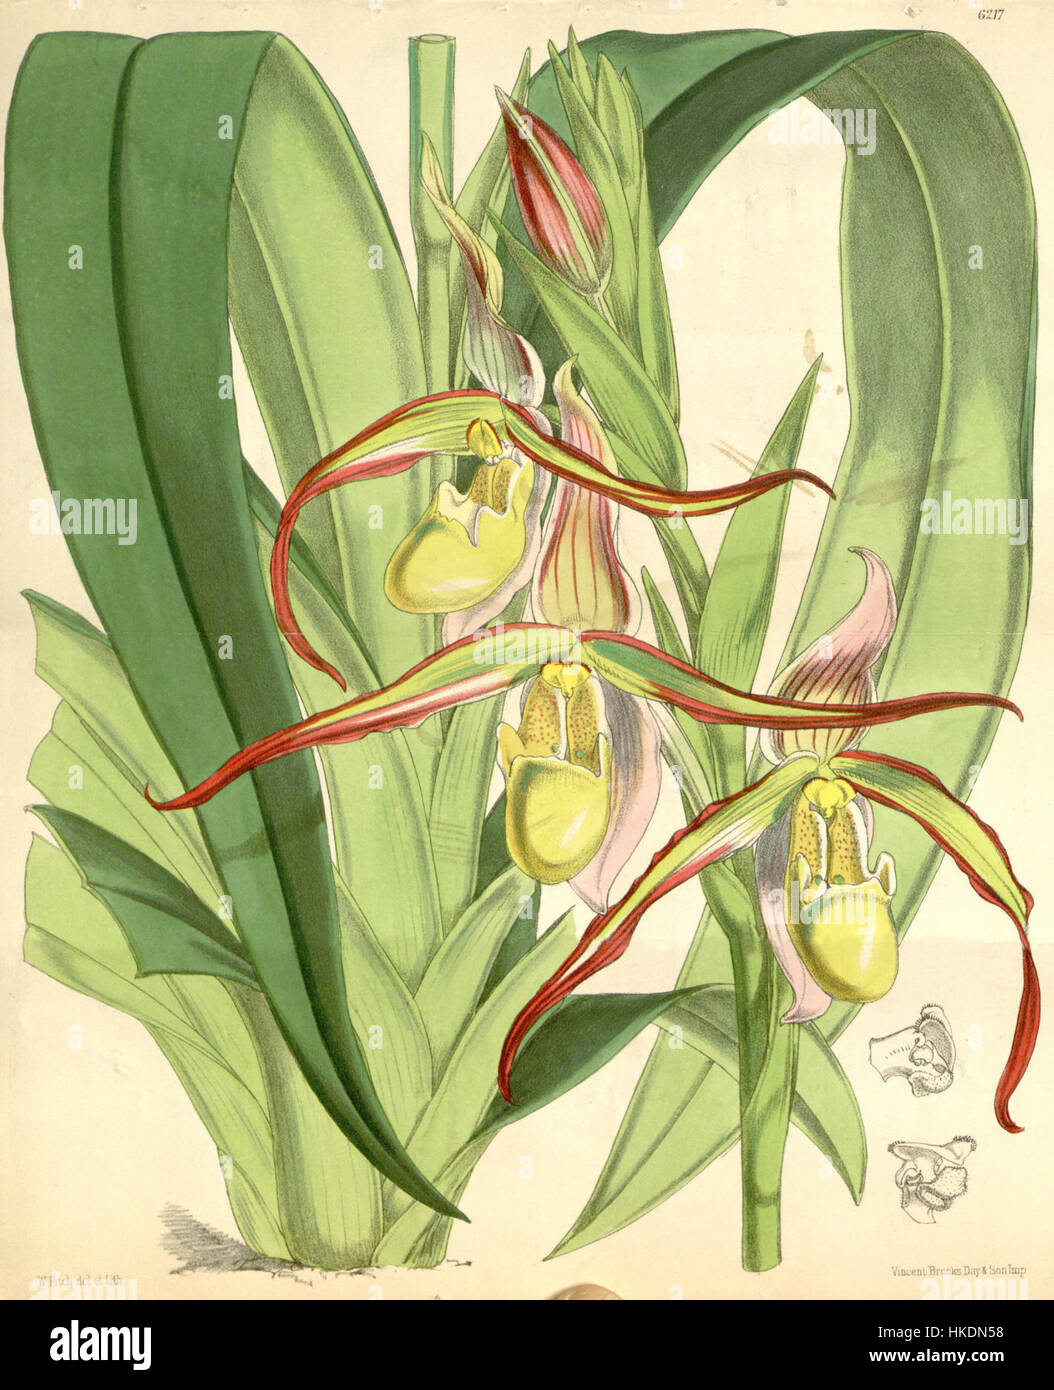 Phragmipedium longifolium (as Cypripedium roezlii)   Curtis' 102 (Ser. 3 no. 32) pl. 6217 (1876) Stock Photo